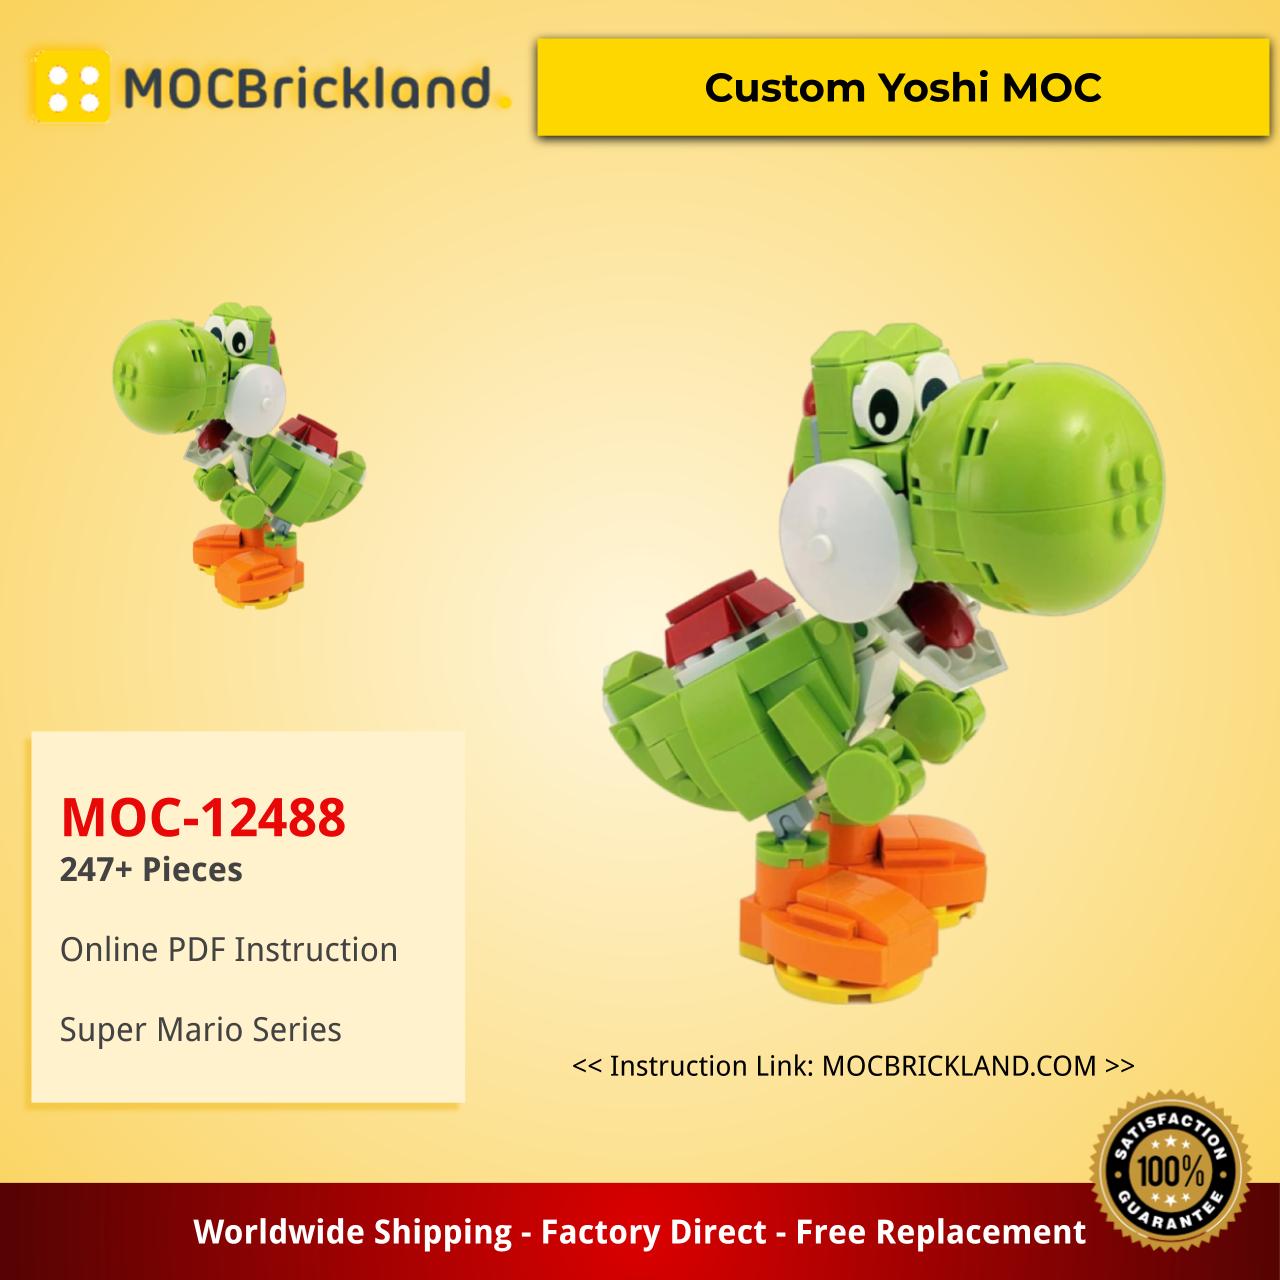 MOCBRICKLAND MOC-12488 Yoshi